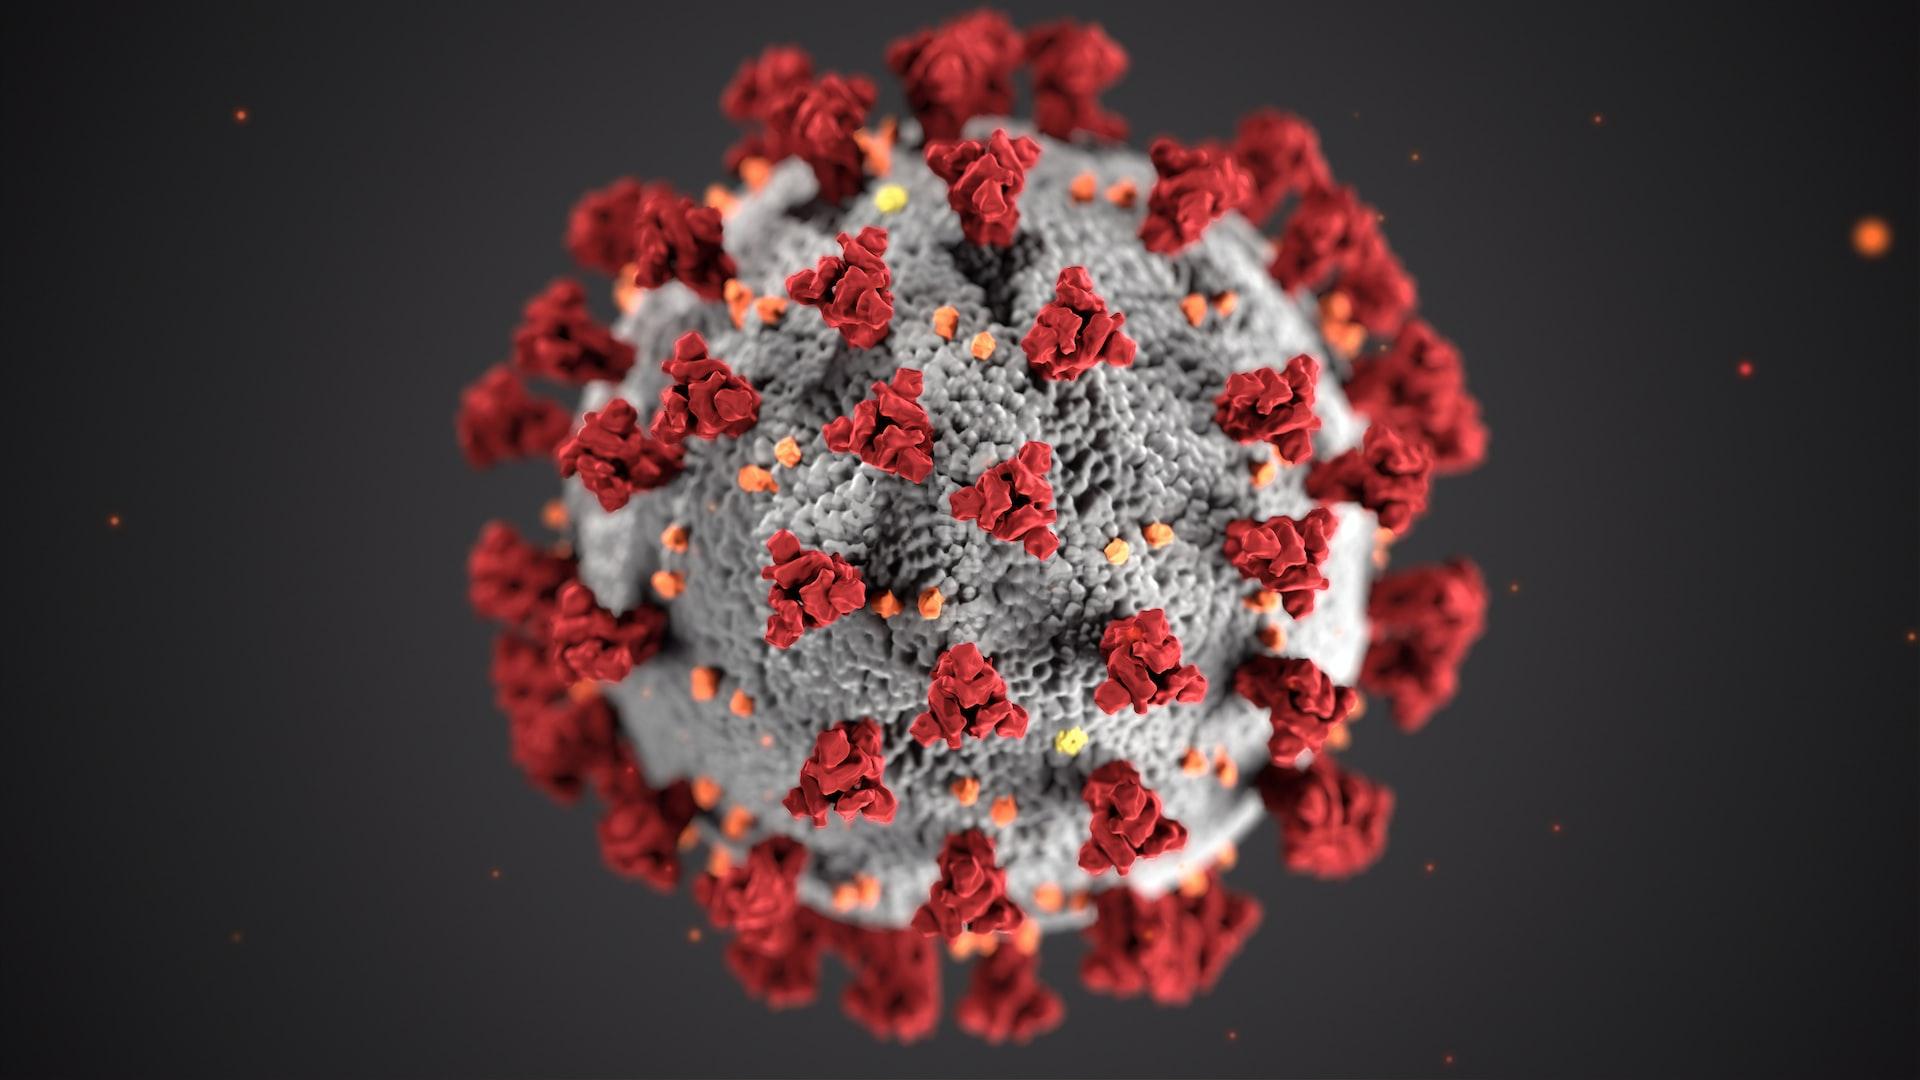 Zeerleder_Körpereigenes Immunsystem.jpg